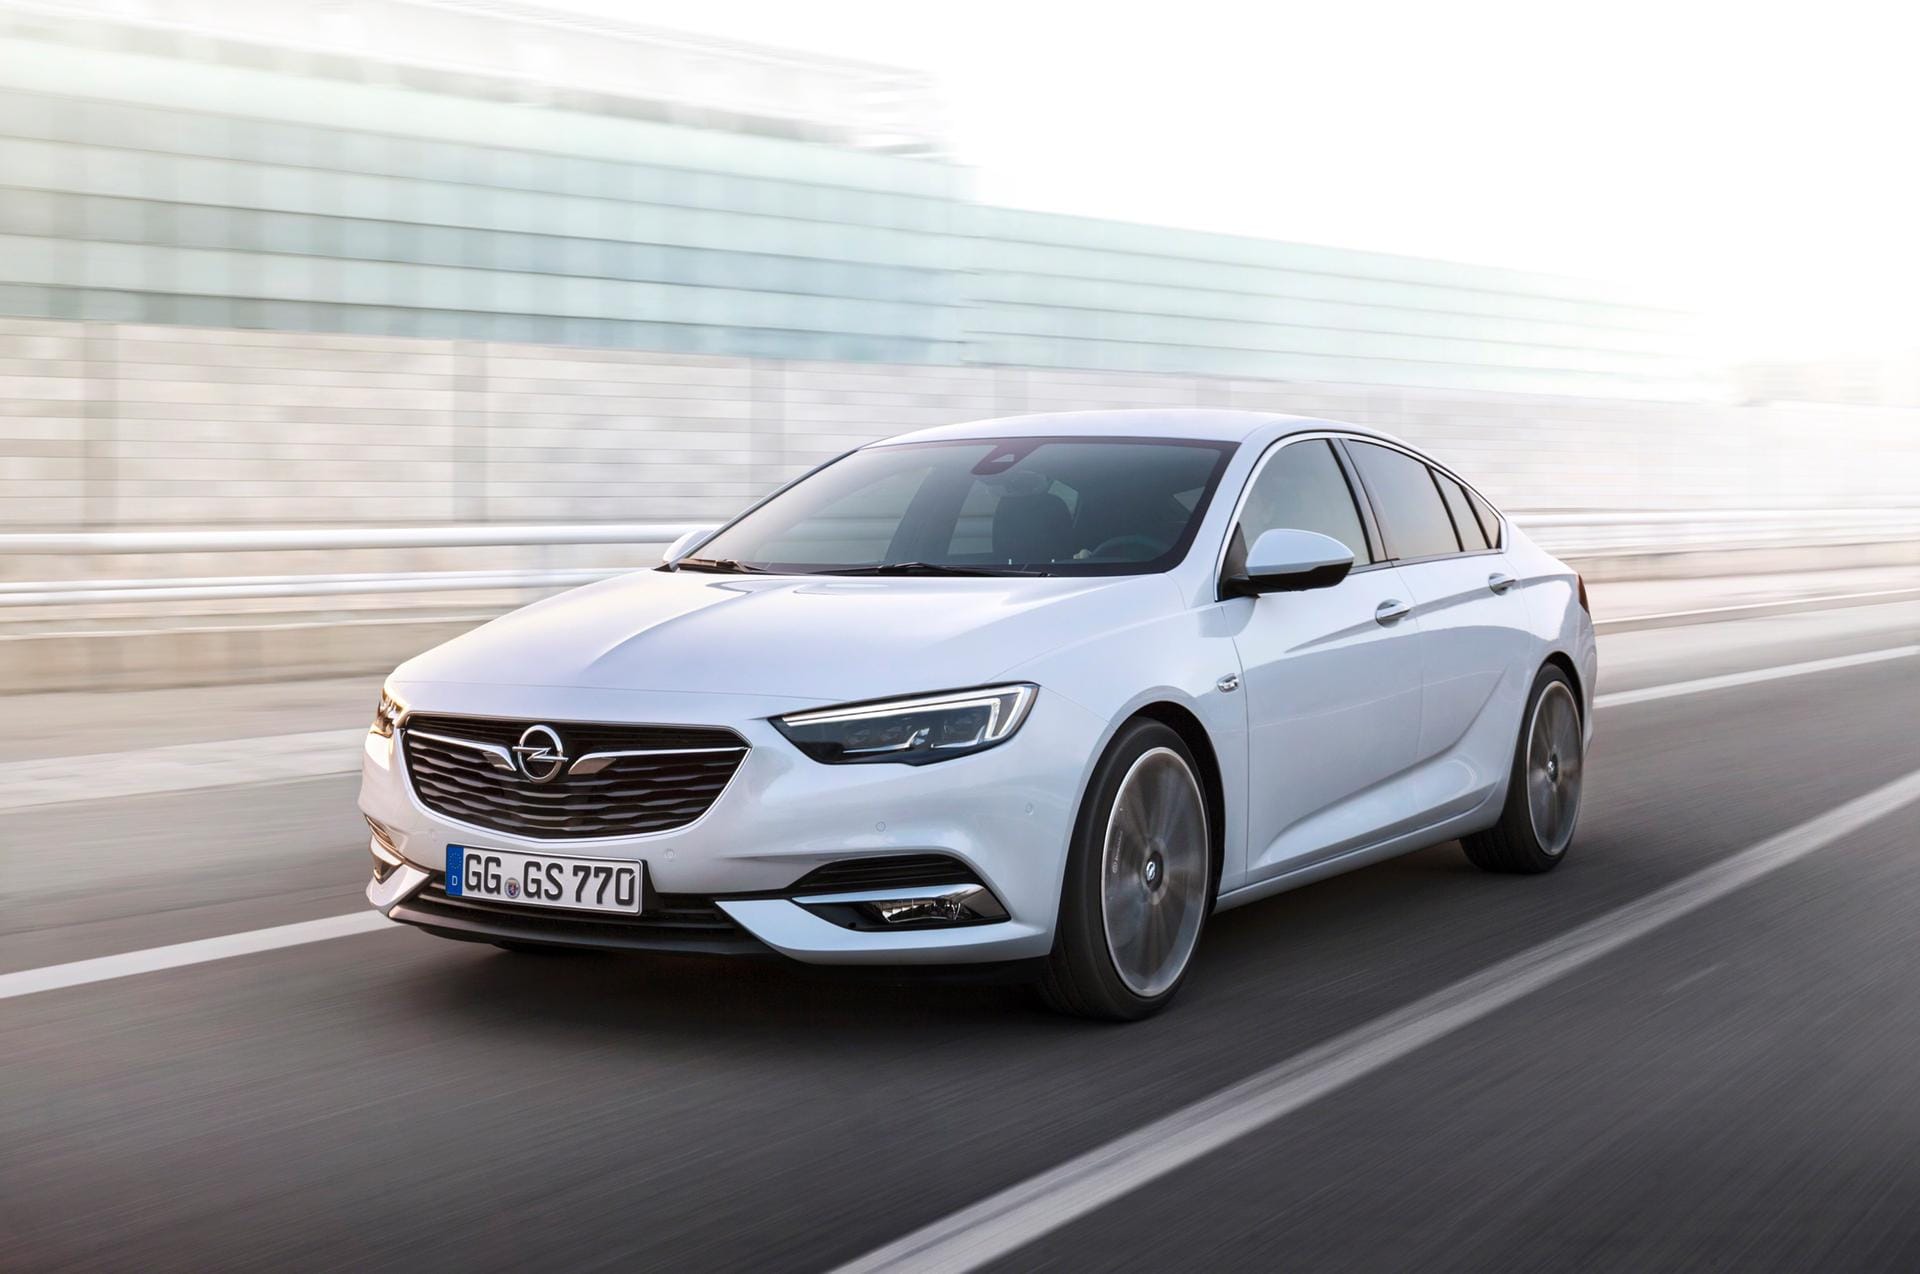 Kann sich sehen lassen: Der neue Opel Insignia mit dem Namenszusatz Grand Sport.